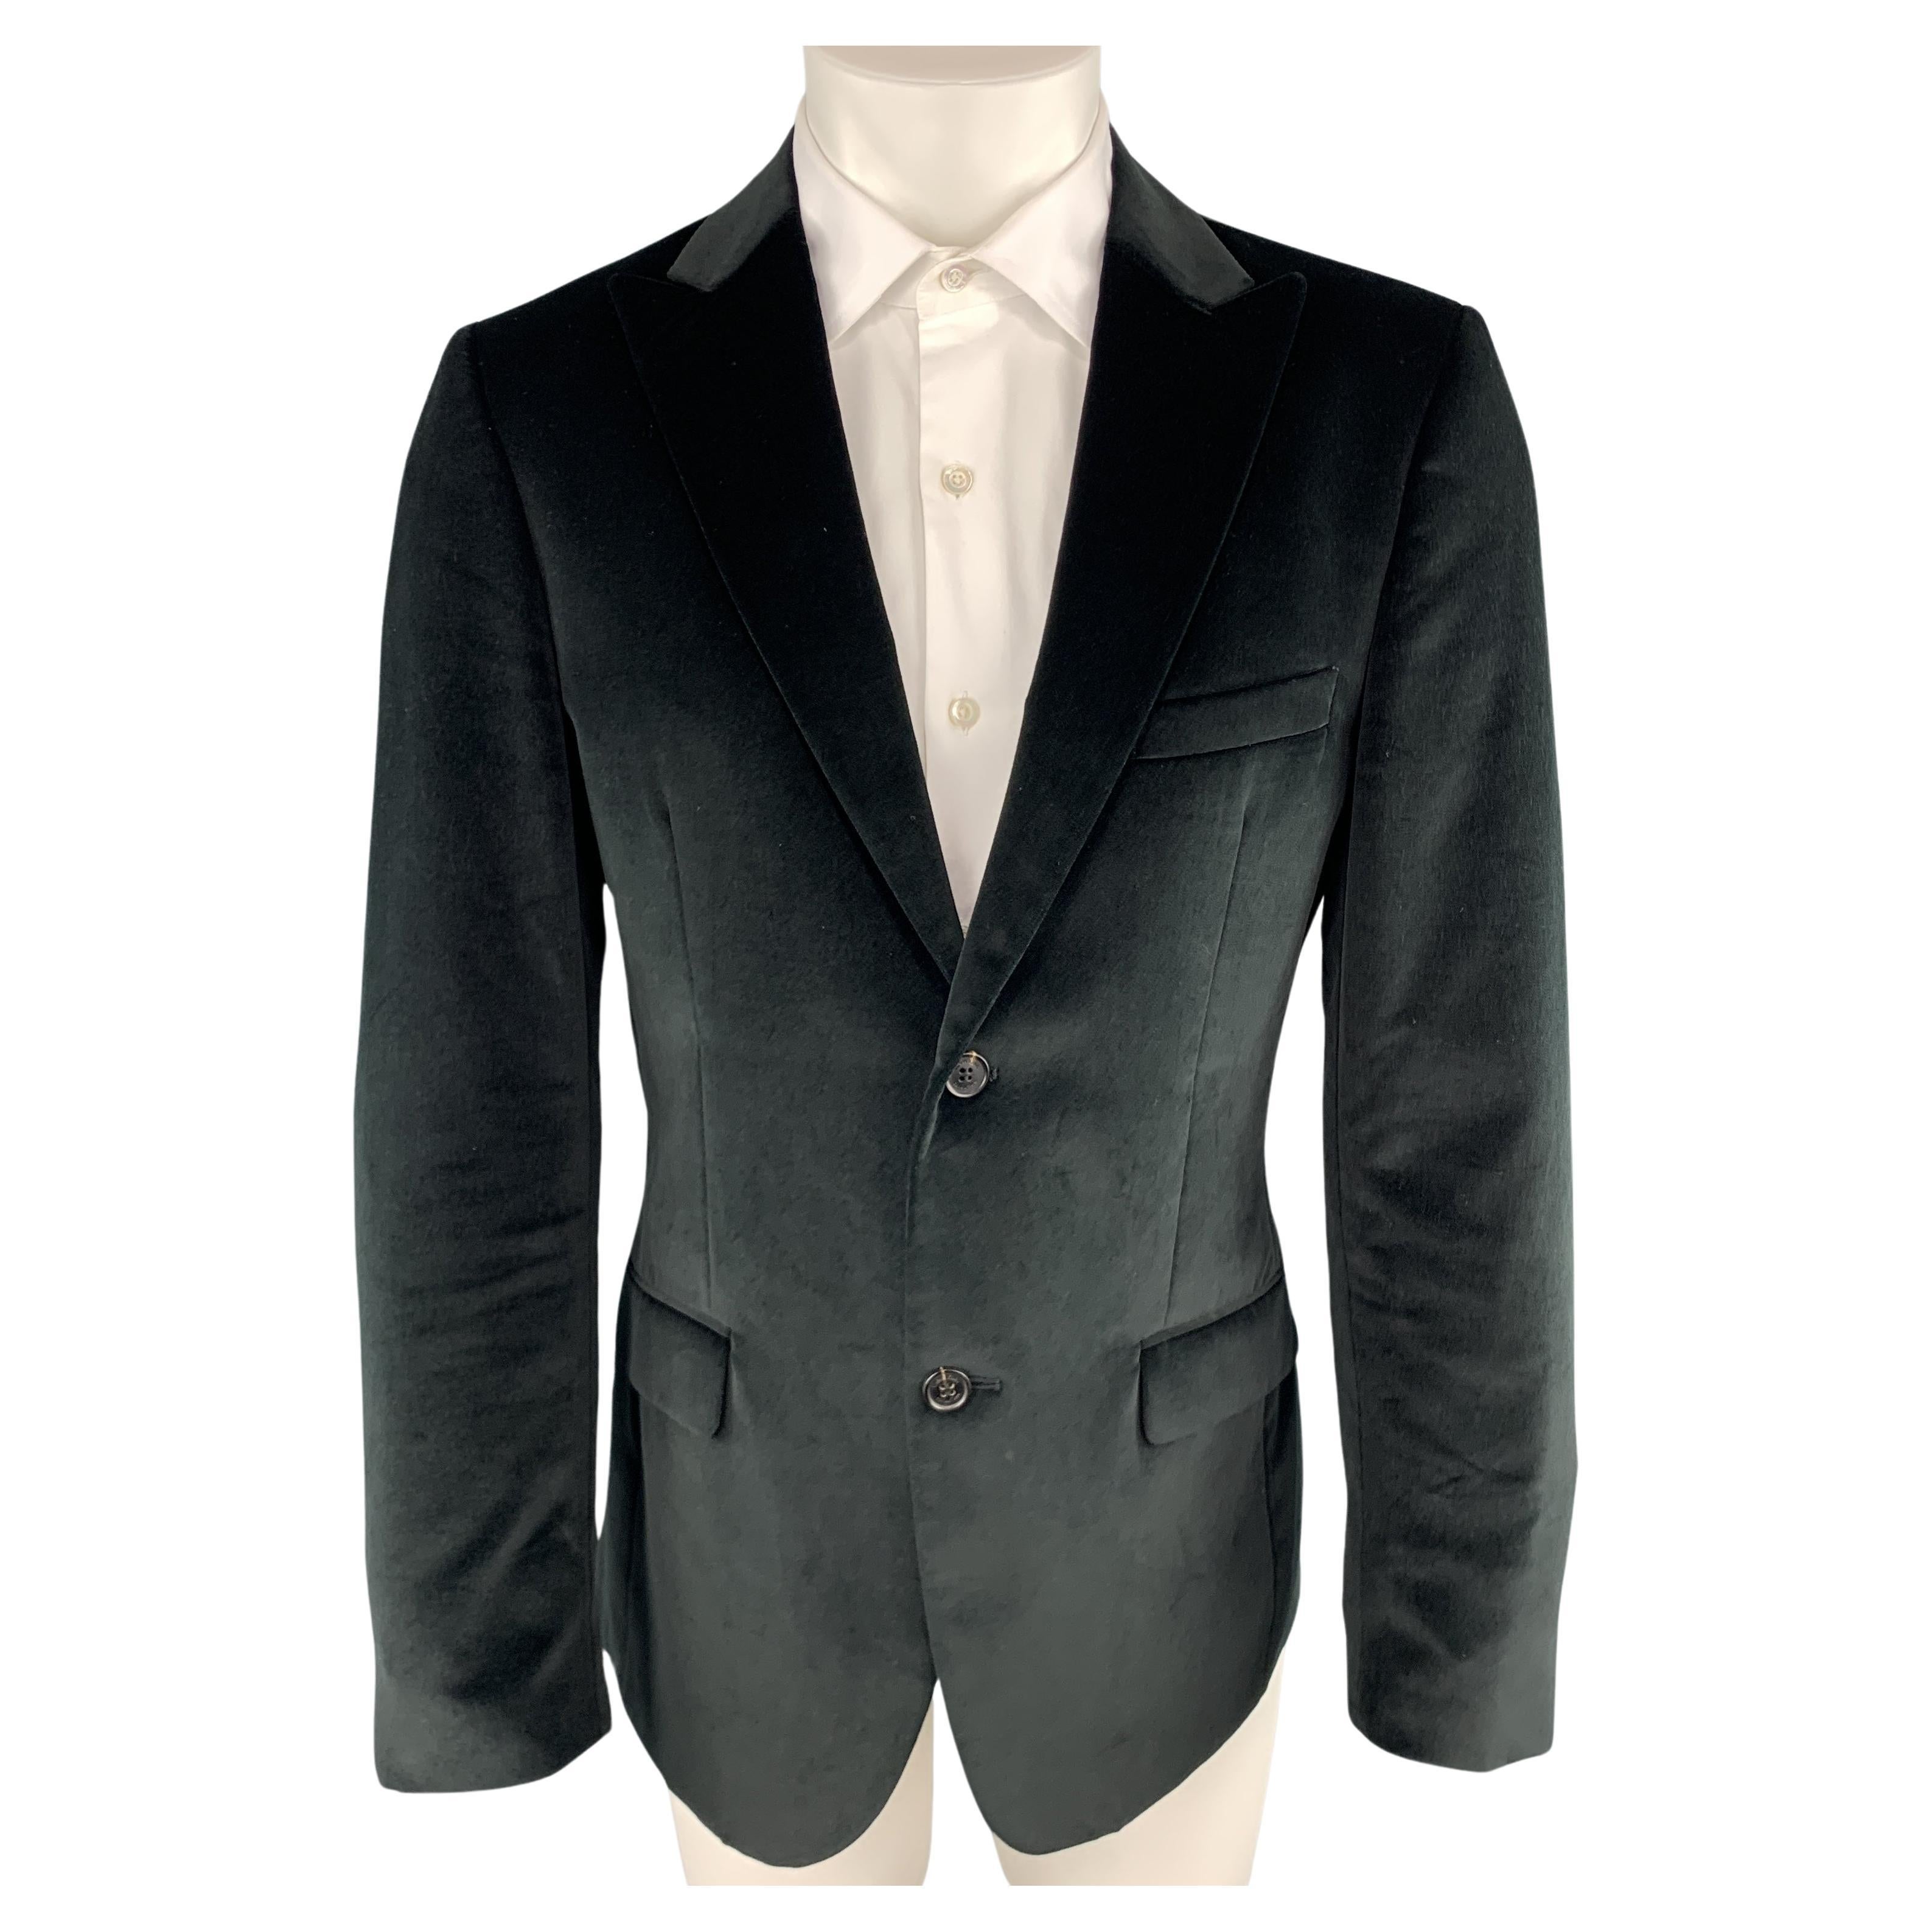 CALVIN KLEIN COLLECTION Size 38 Short Black Cotton Velvet Peak Lapel Sport Coat For Sale